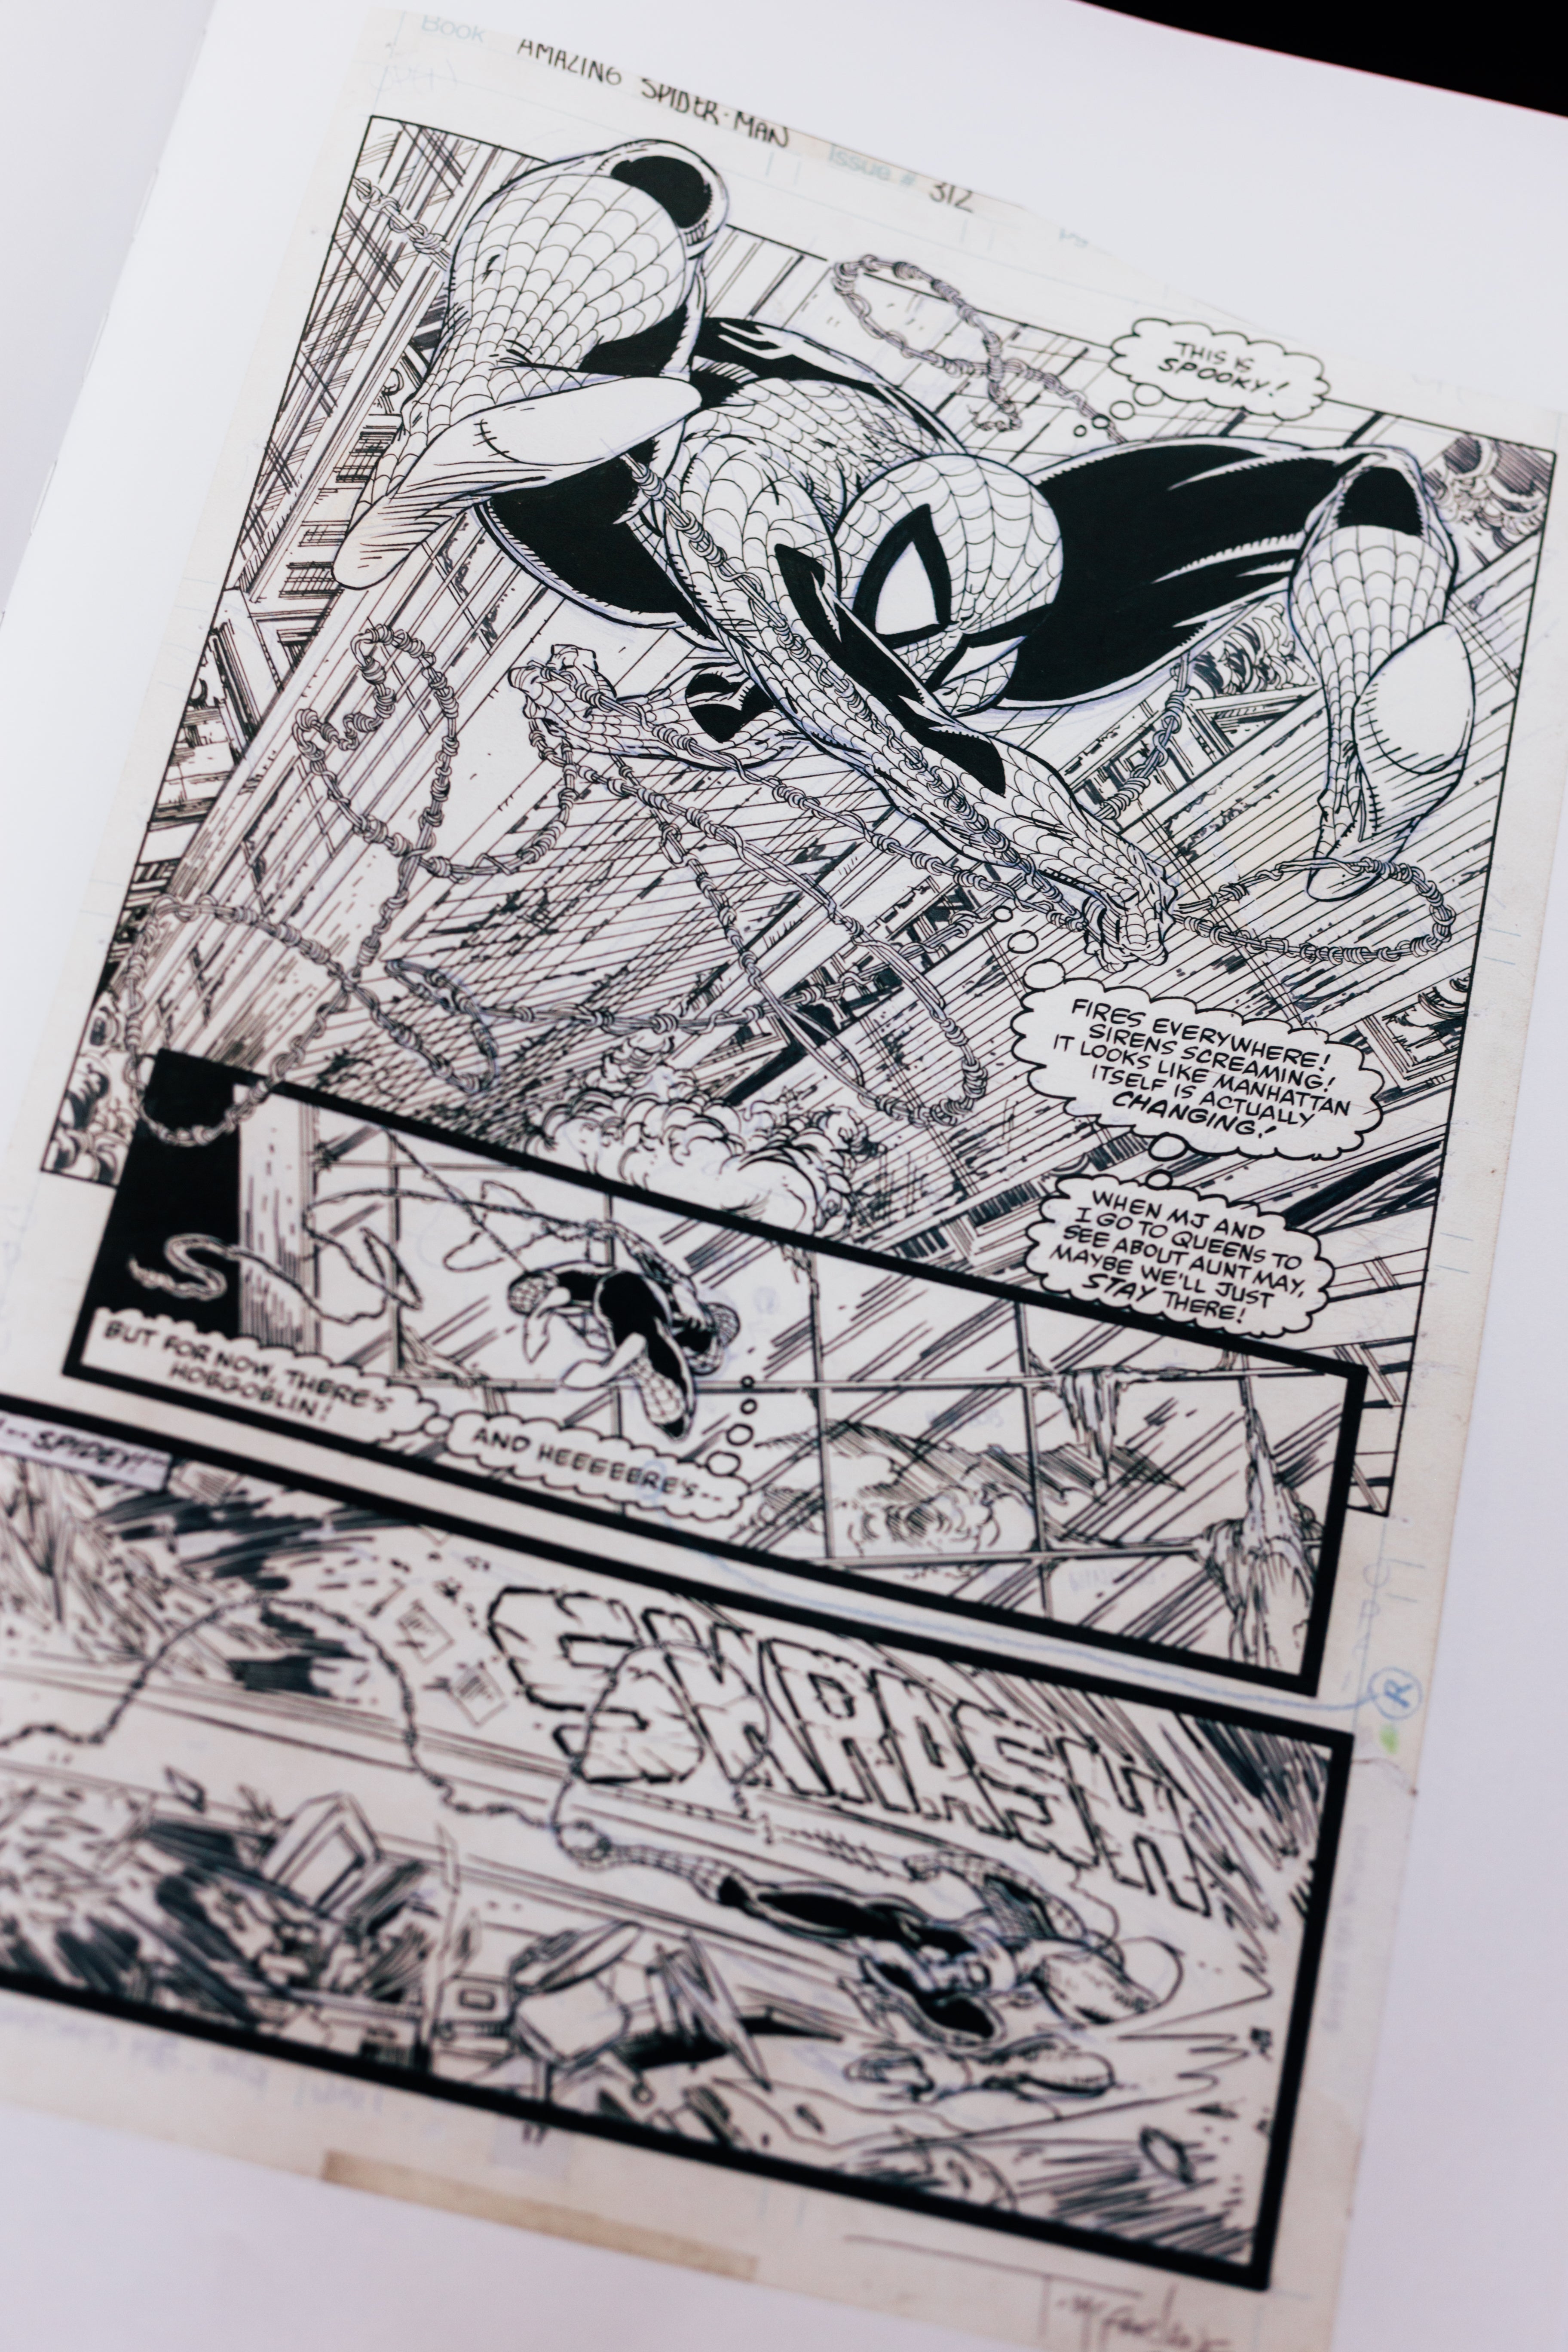 Todd McFarlane's Spider-Man Artist’s Edition